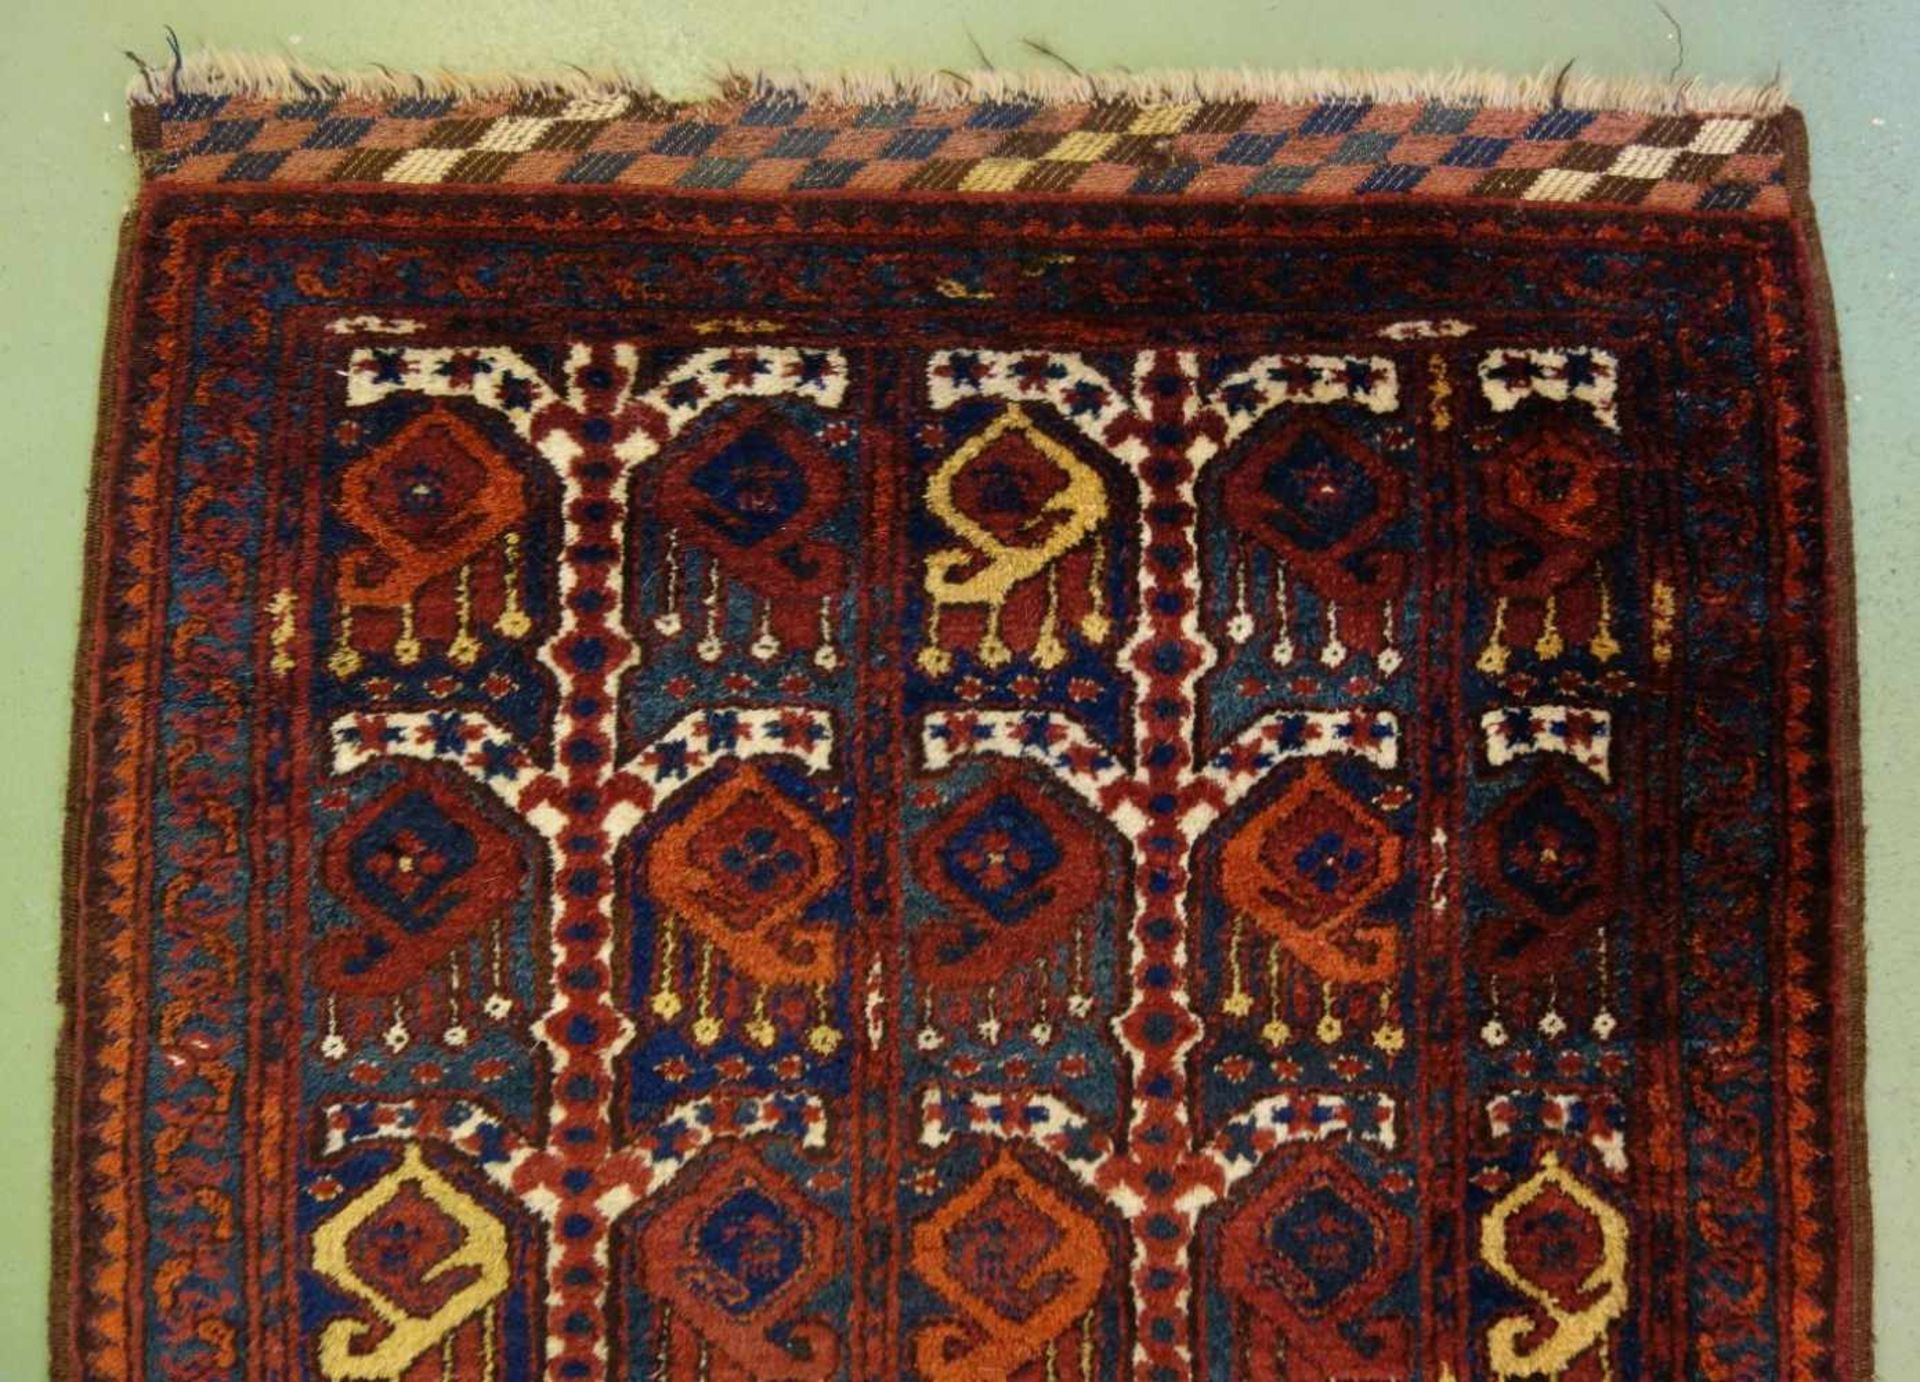 BESCHIR (ERSARI BESCHIR) / KLEINER TEPPICH / carpet / Zentralasien oder Südturkestan, wahrscheinlich - Image 9 of 15